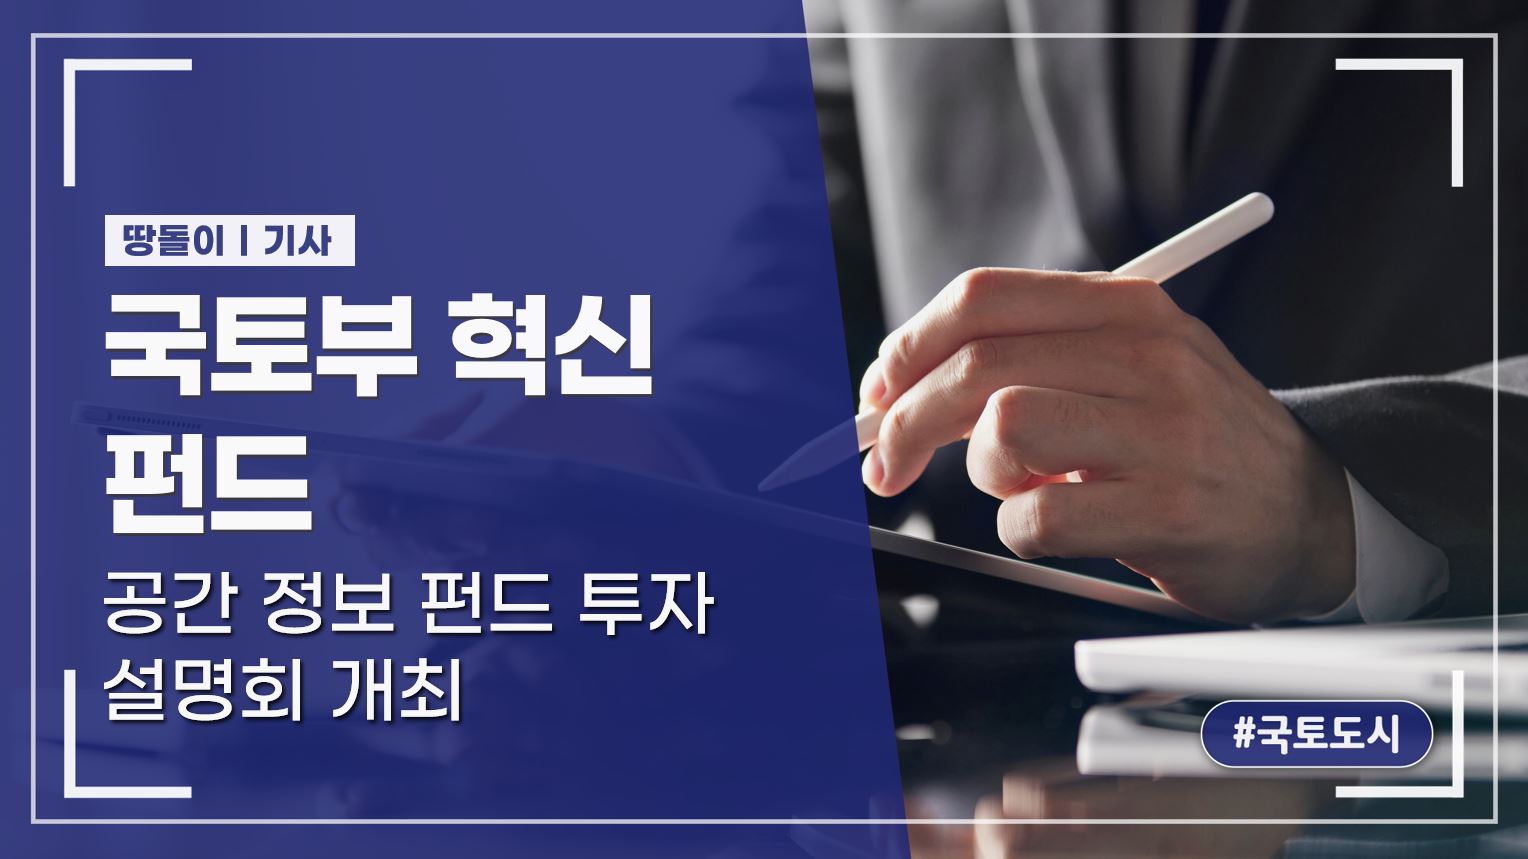 국토부 혁신 펀드, 공간 정보 펀드 투자 설명회 개최